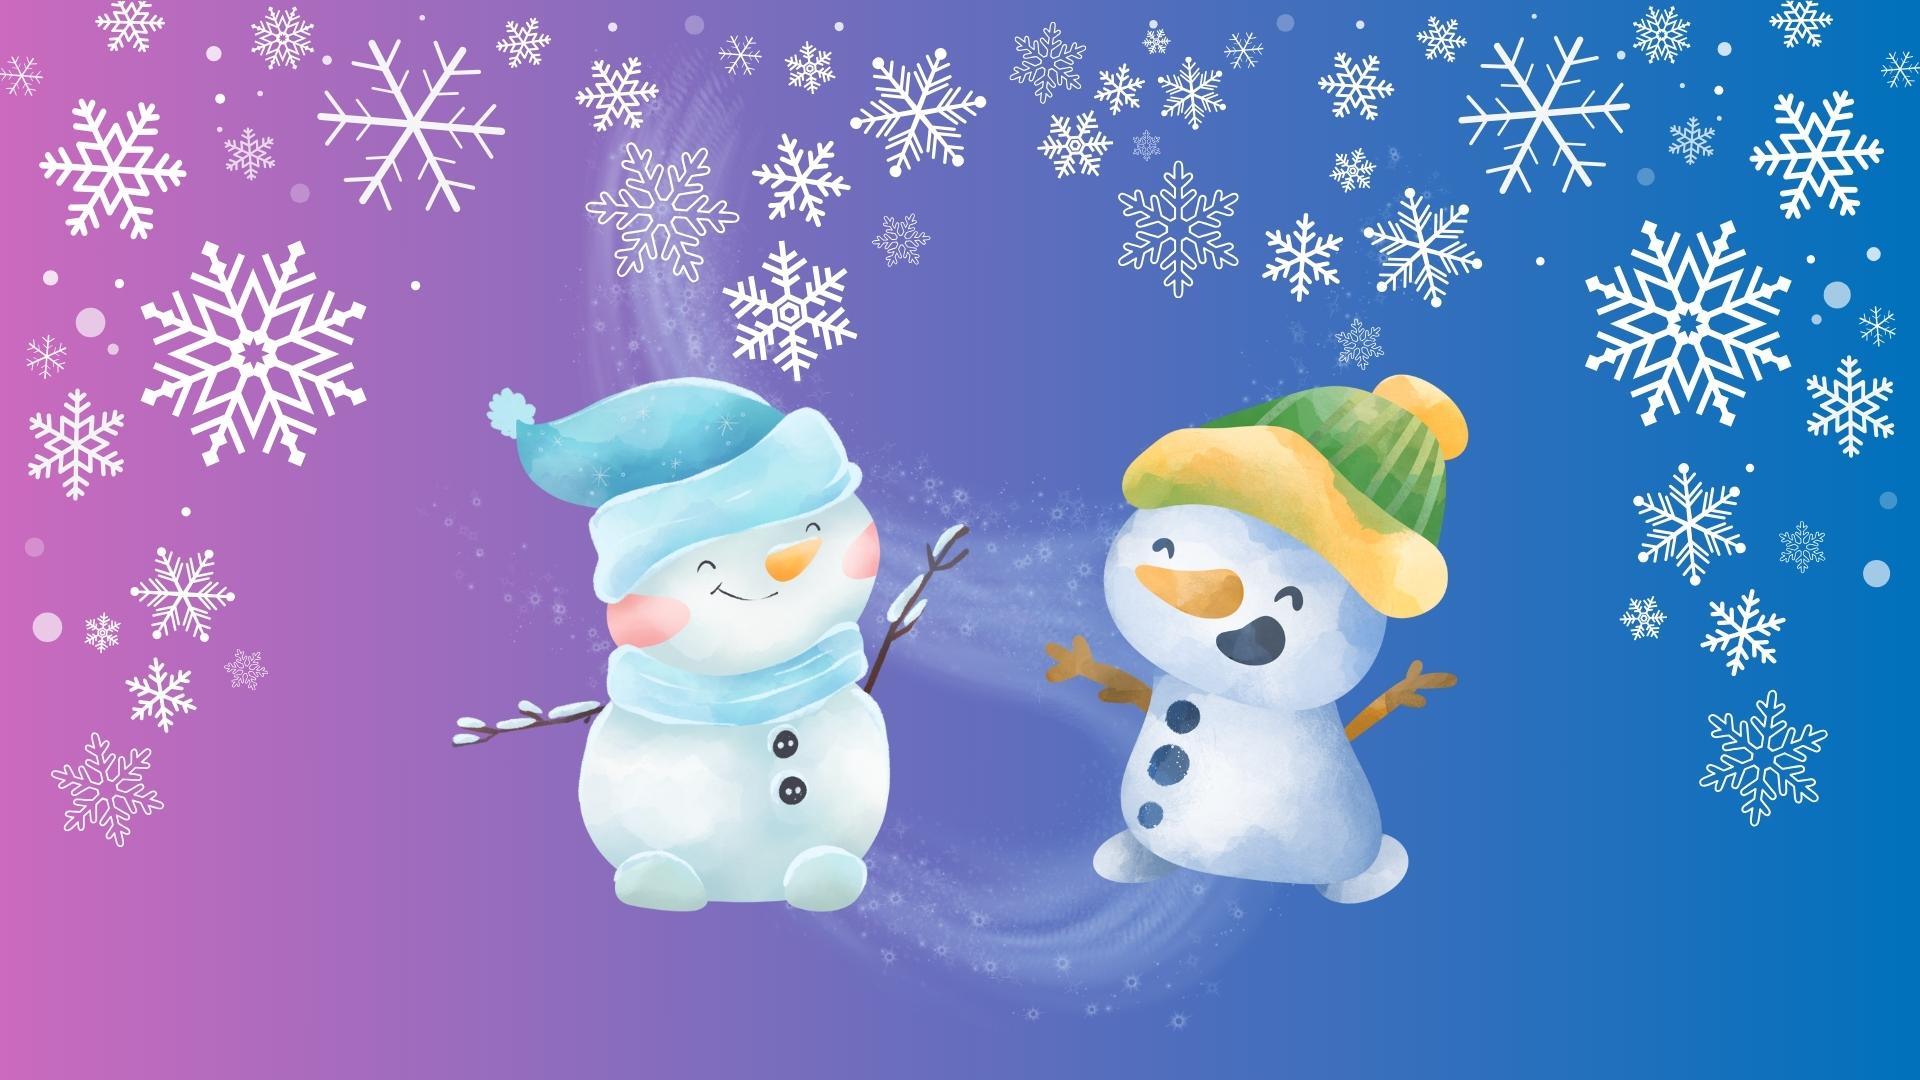 Kaksi lumiukkoa iloitsee lumisateessa. Toisella on punaiset posket ja sininen lakki ja huivi, toisella päässä on keltavihreä pipo.